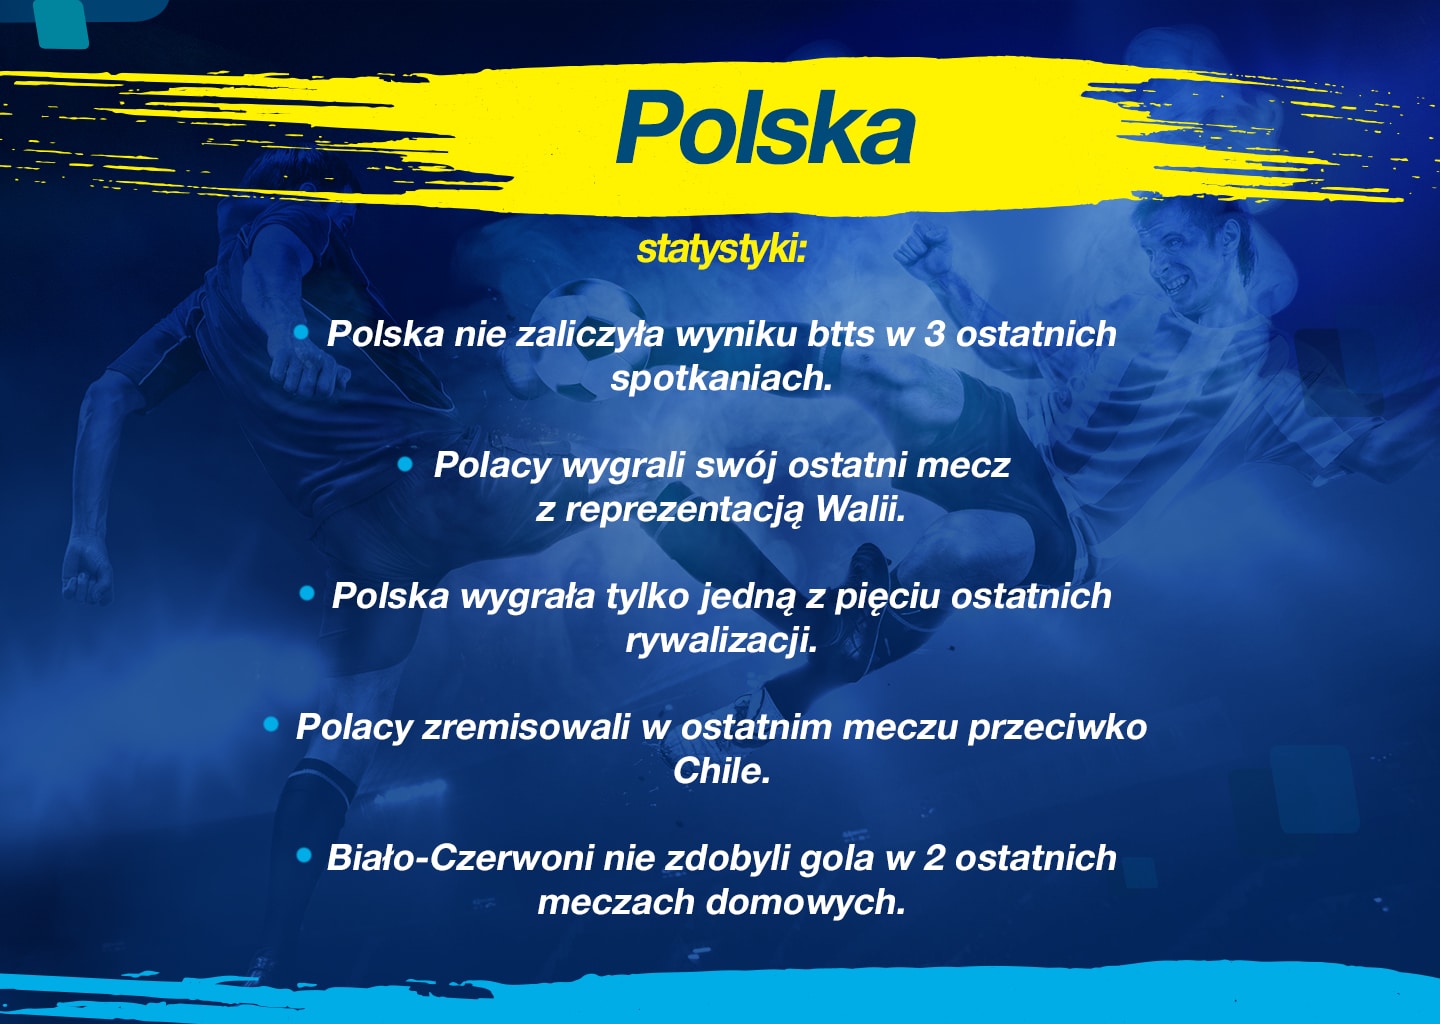 polska chile polska statystyki betcris zakłady bukmacherskie